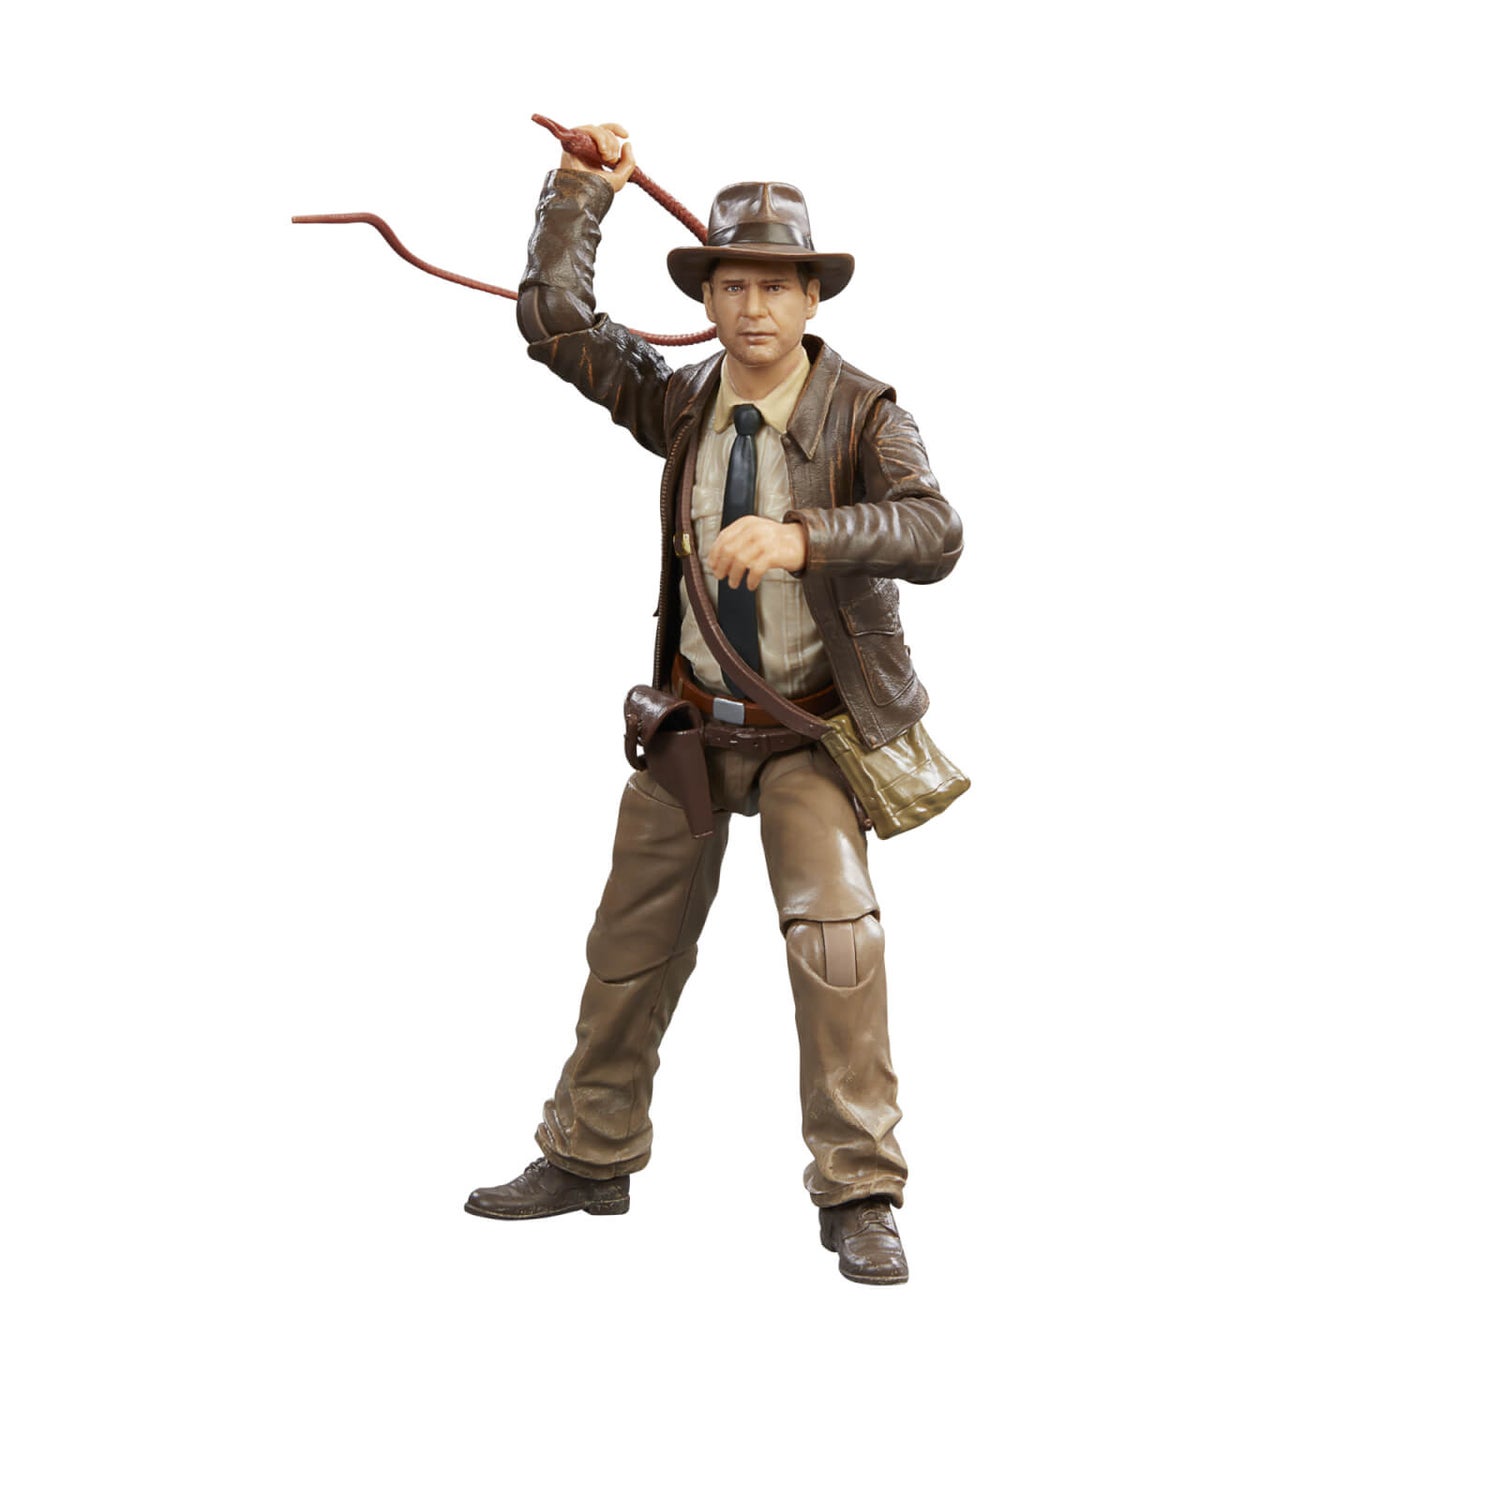 Indiana Jones Adventure Series Indiana Jones (Last Crusade) Action Figure (6”)